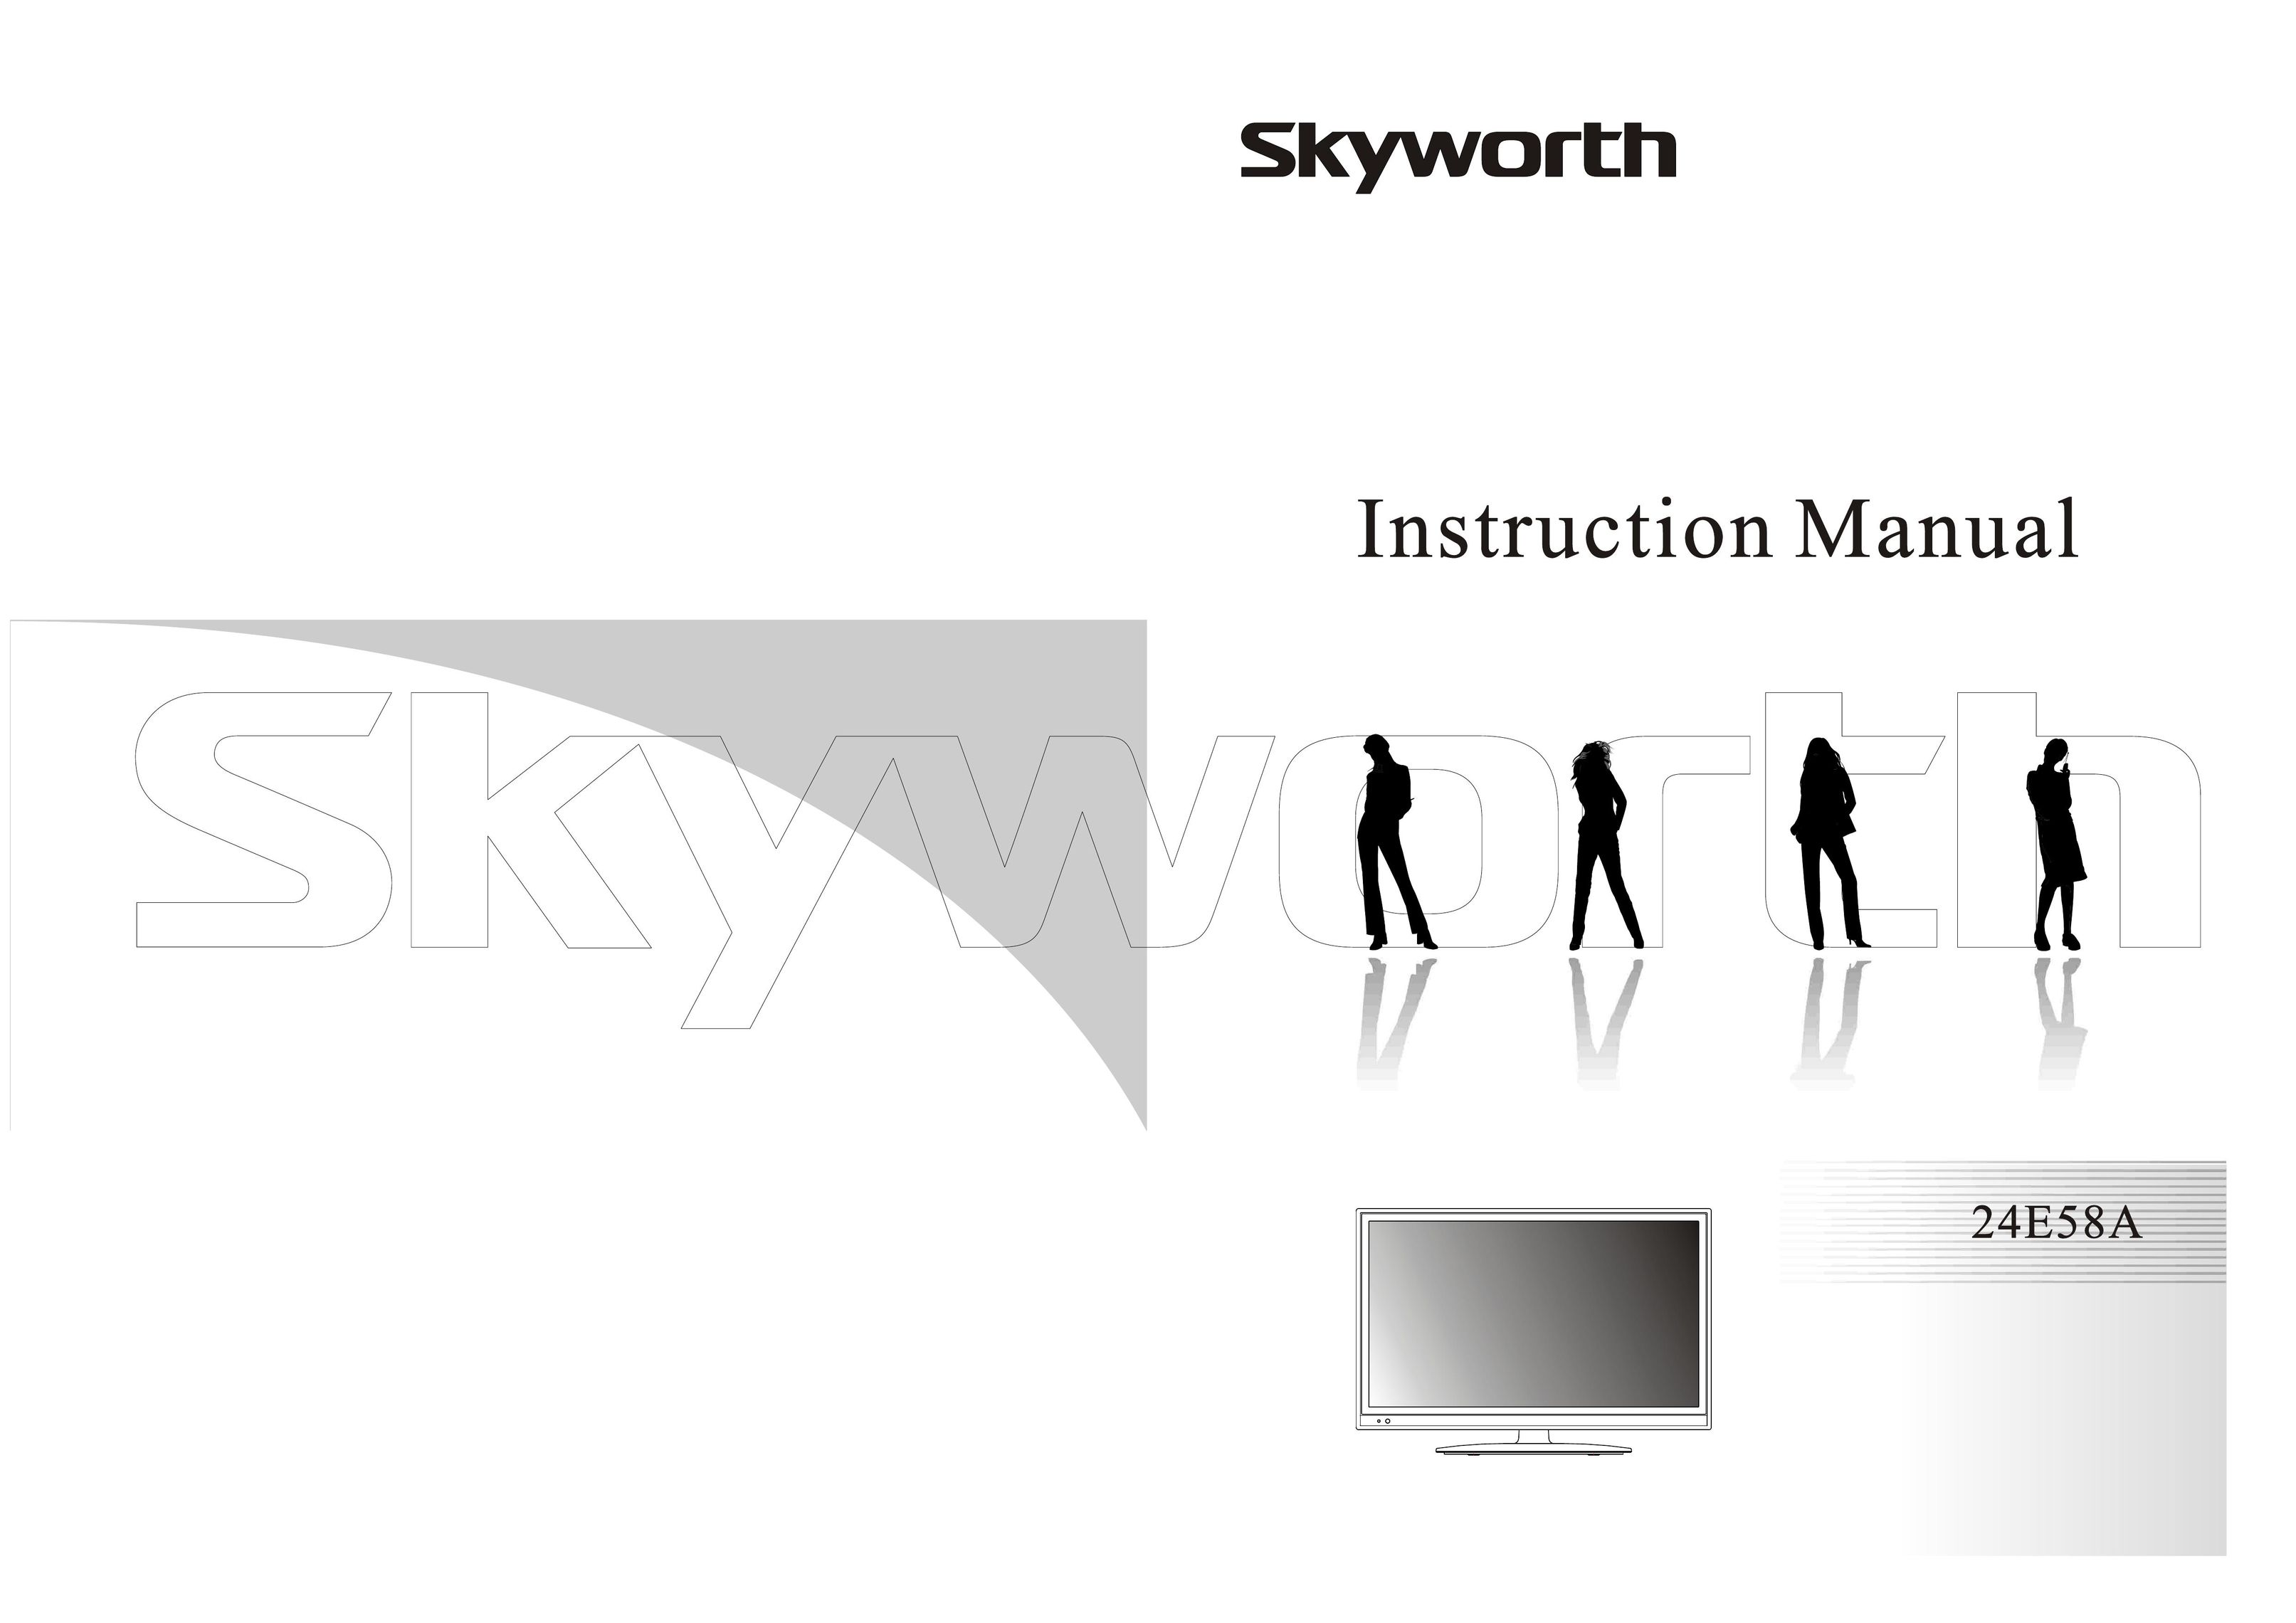 Skyworth 24E58A Flat Panel Television User Manual